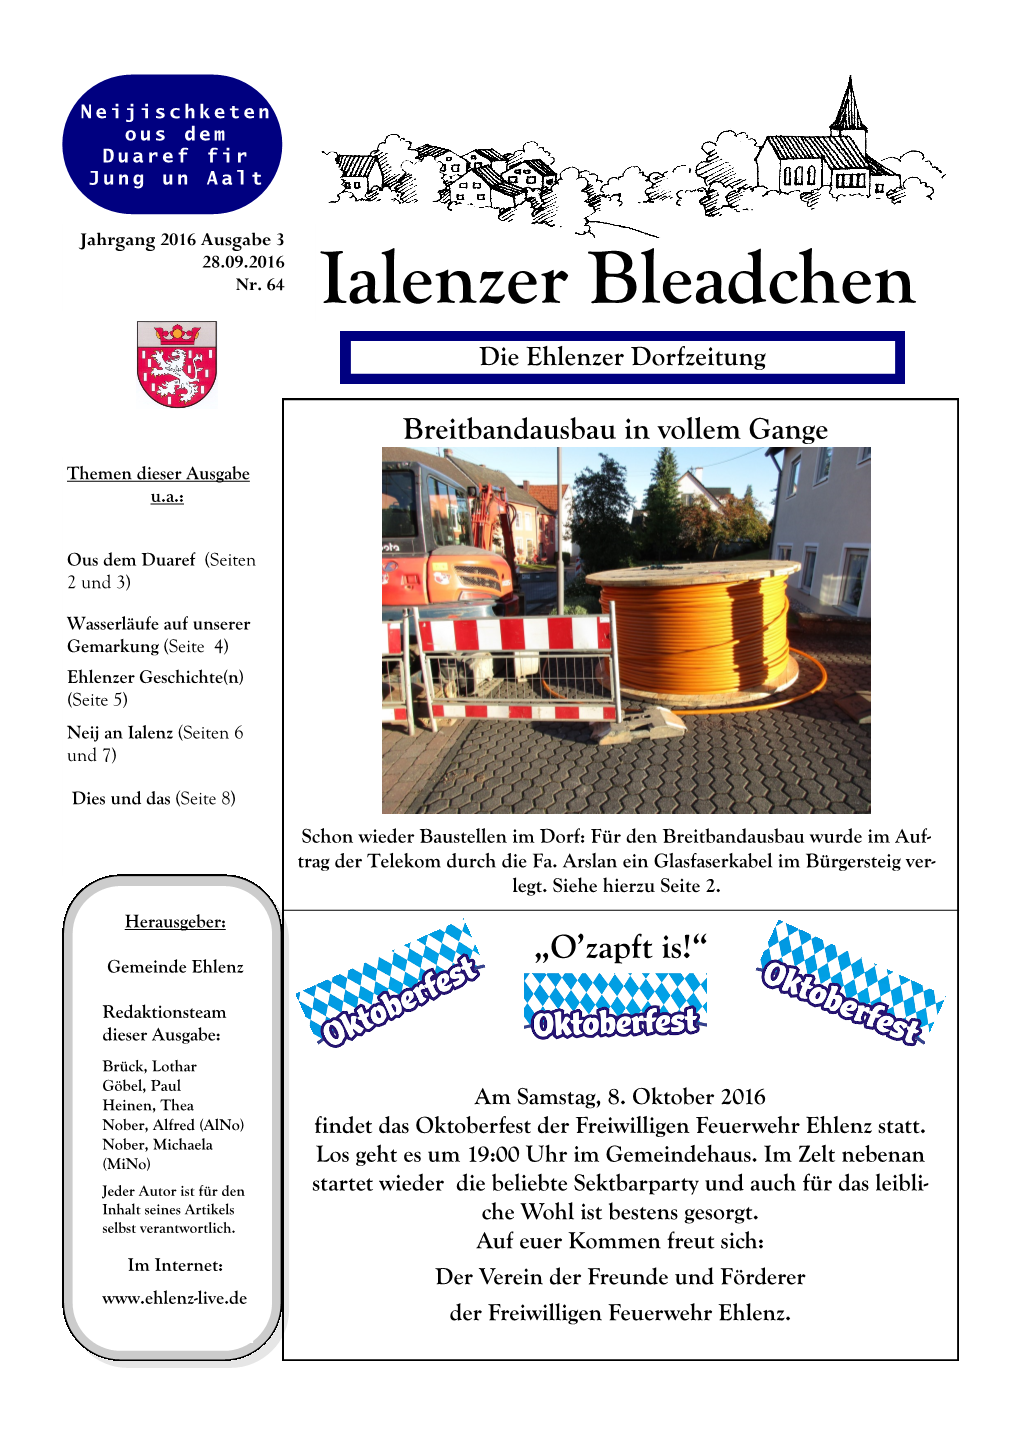 Ialenzer Bleadchen Die Ehlenzer Dorfzeitung